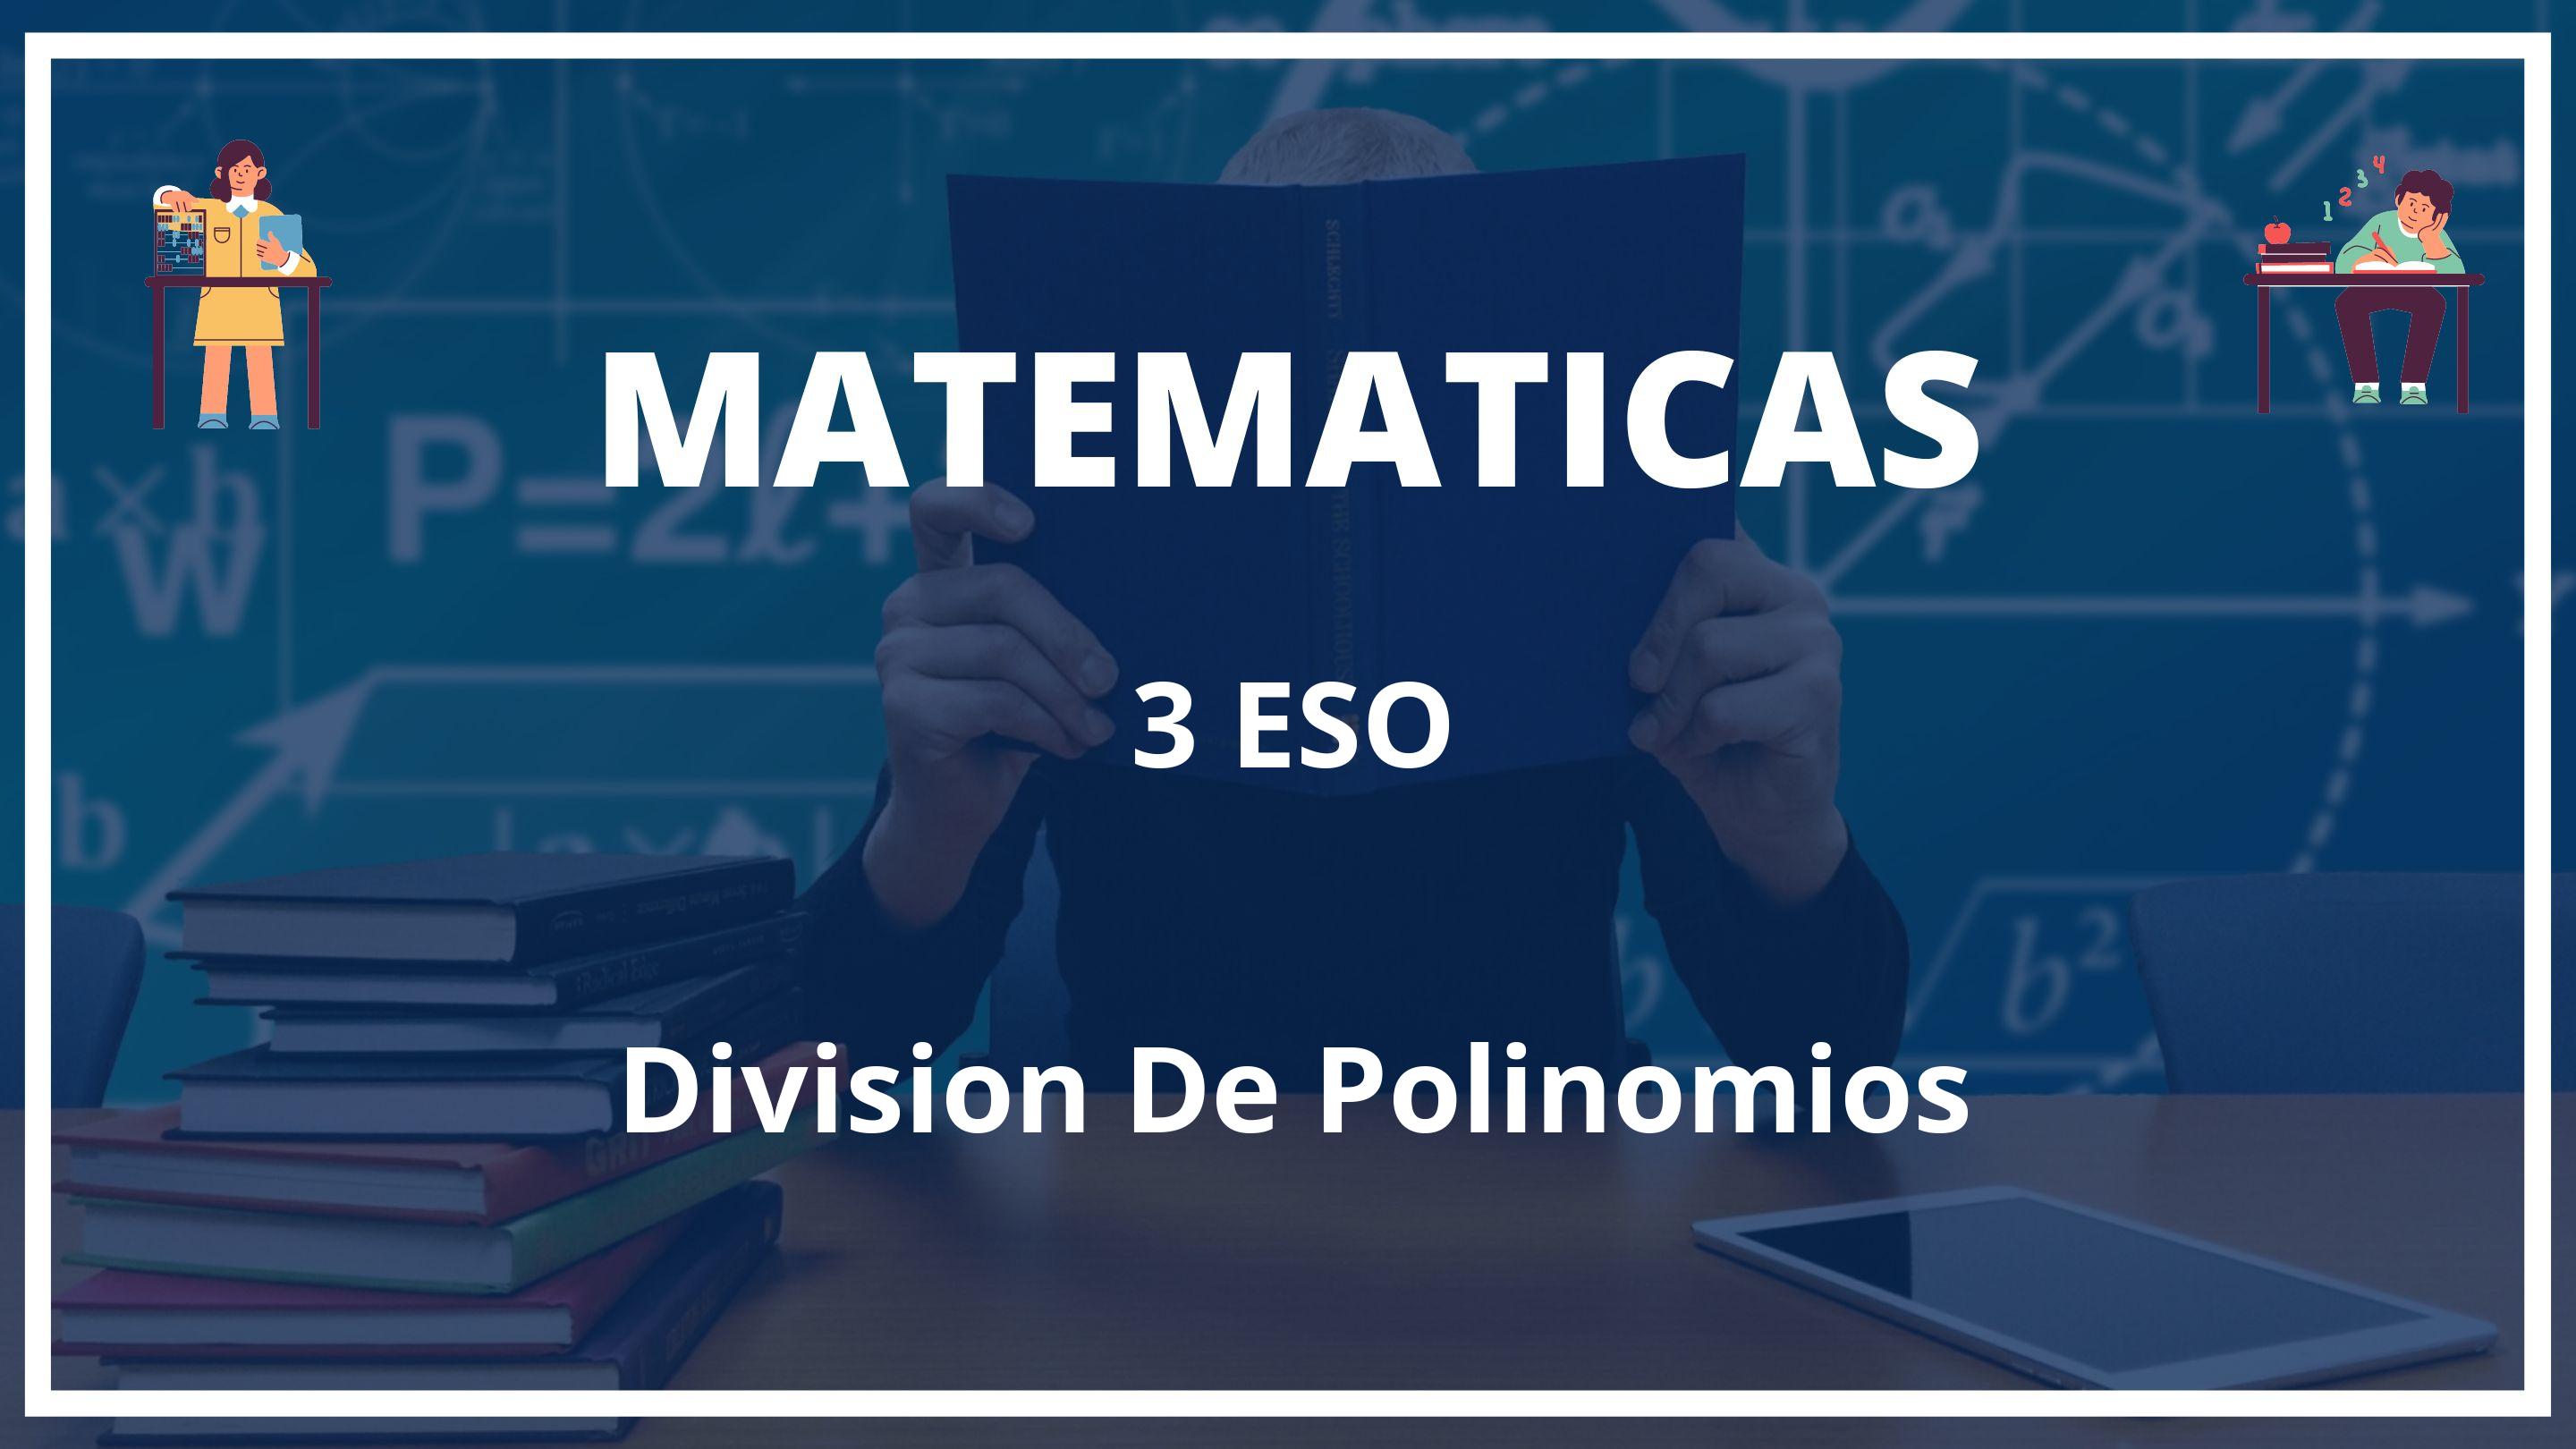 Division De Polinomios 3 ESO